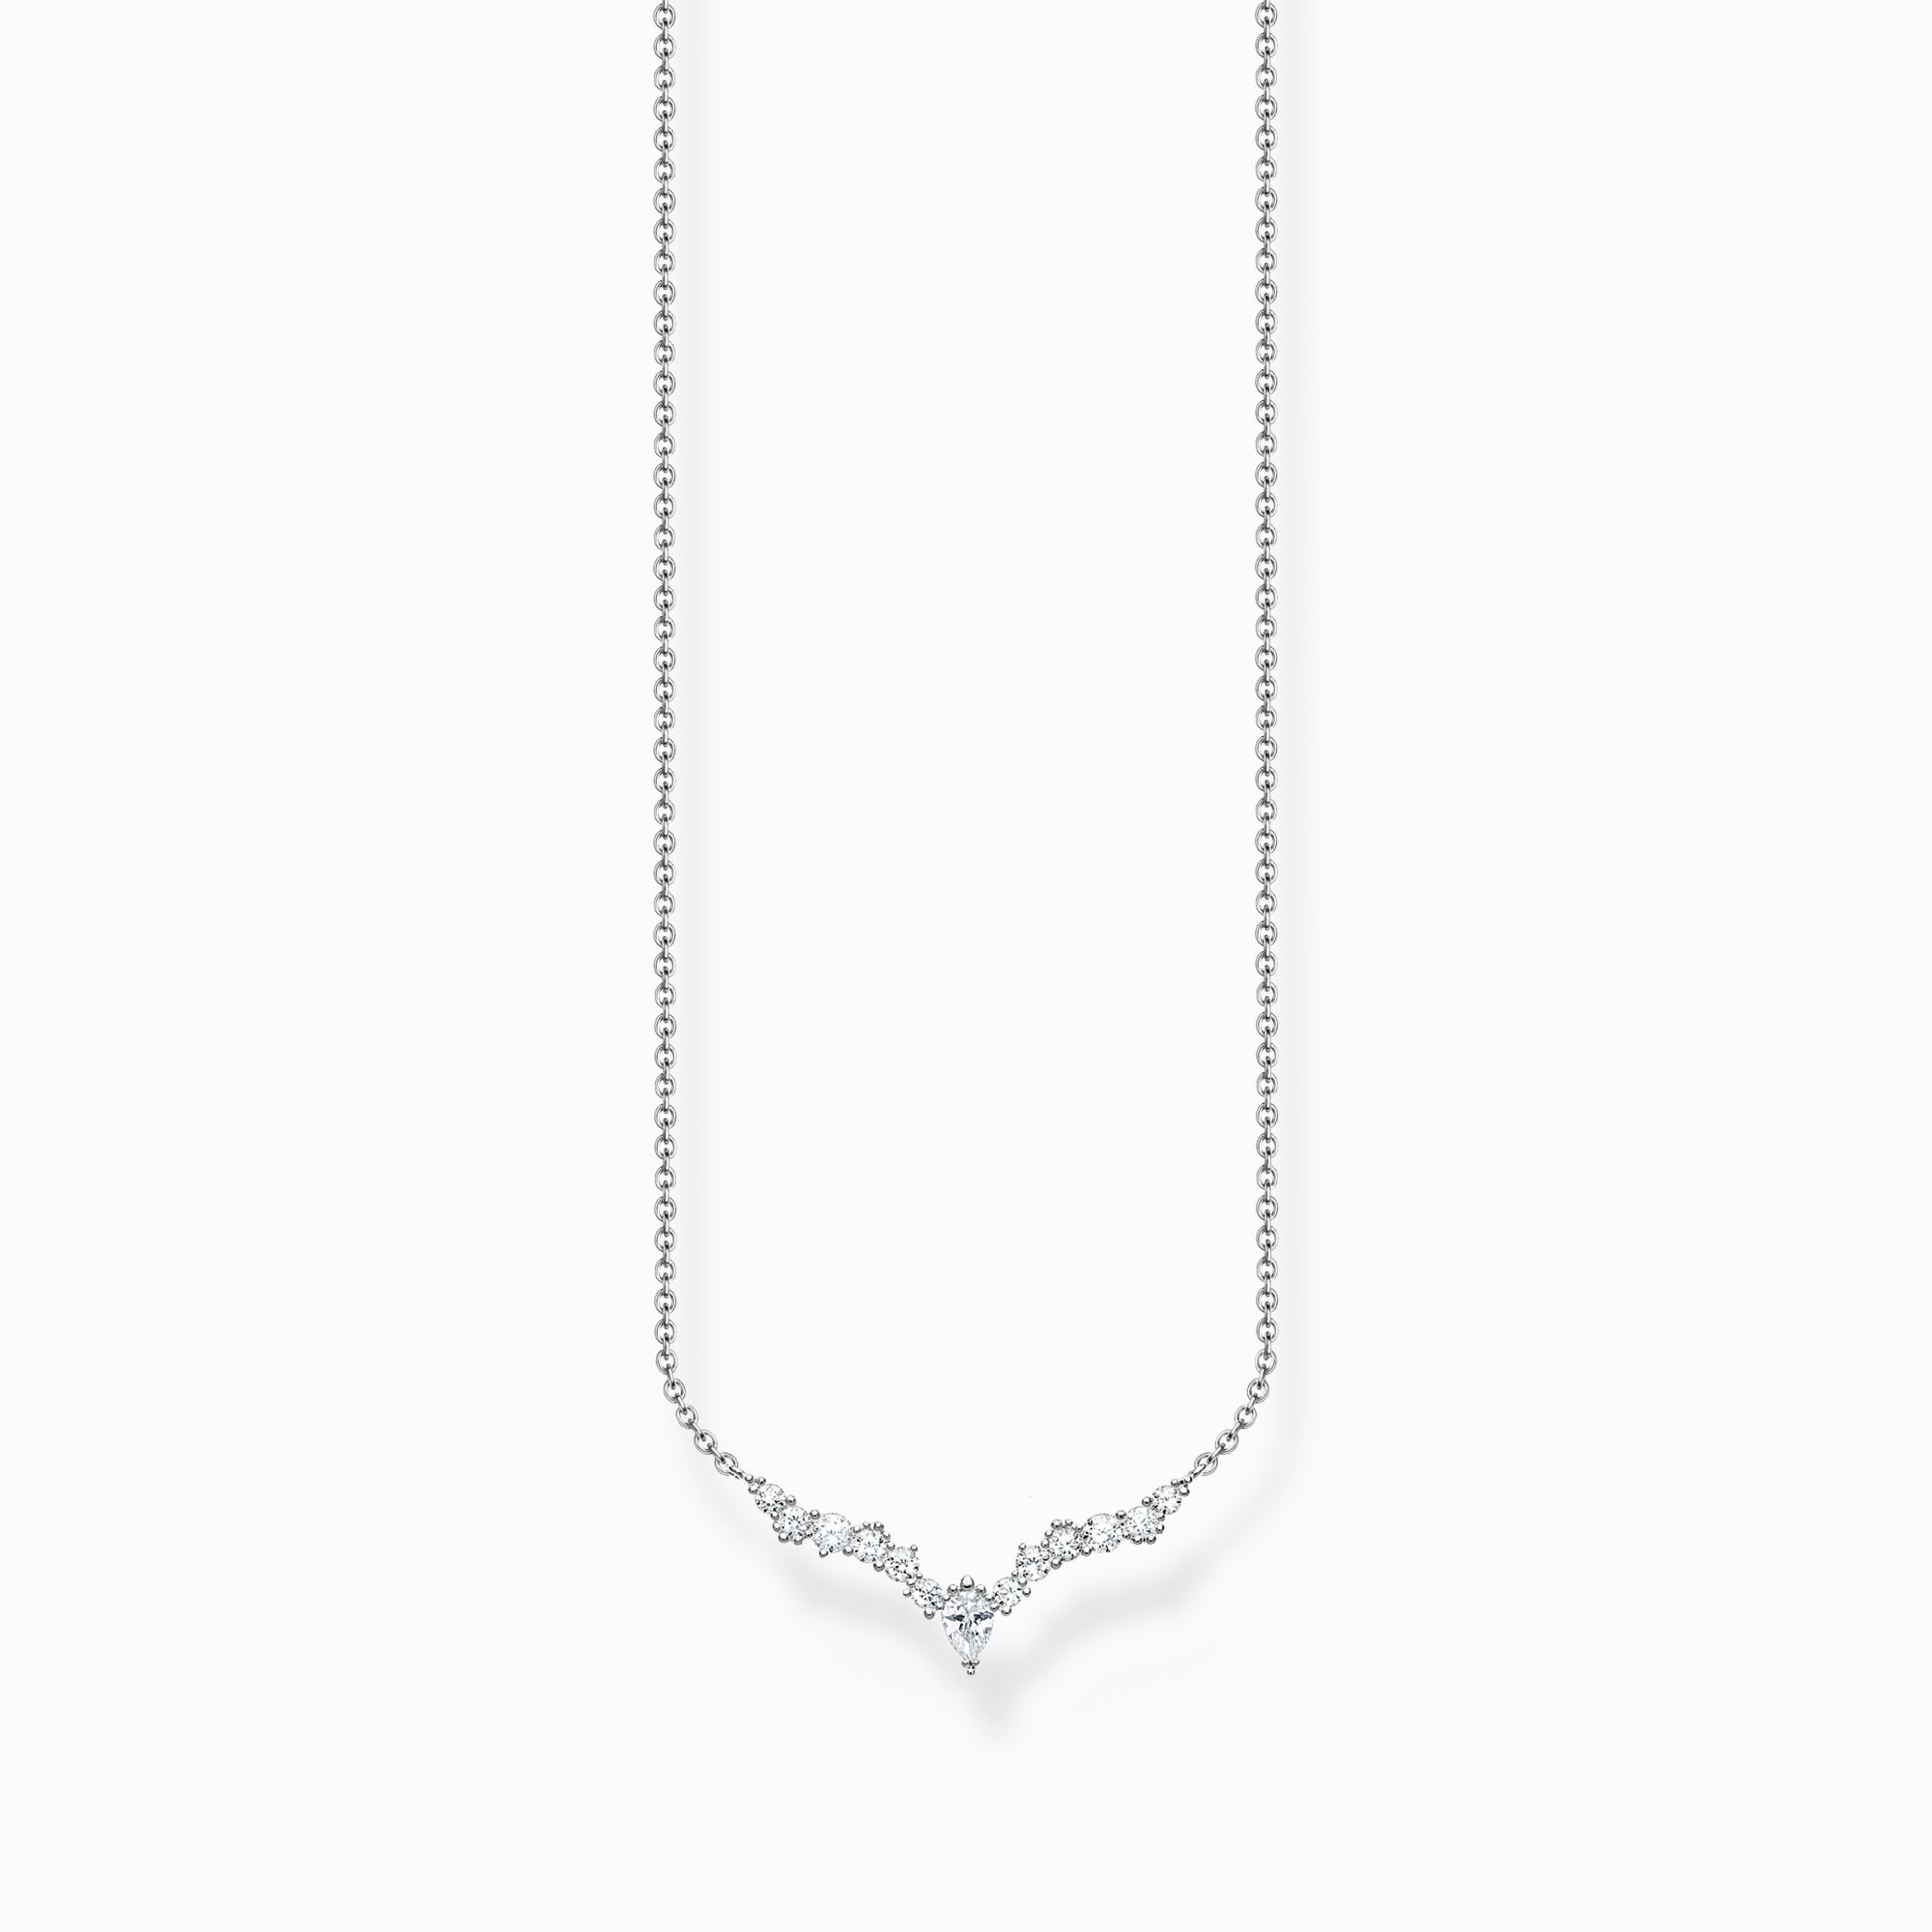 Cadena cristales de hielo silver de la colección Charming Collection en la tienda online de THOMAS SABO